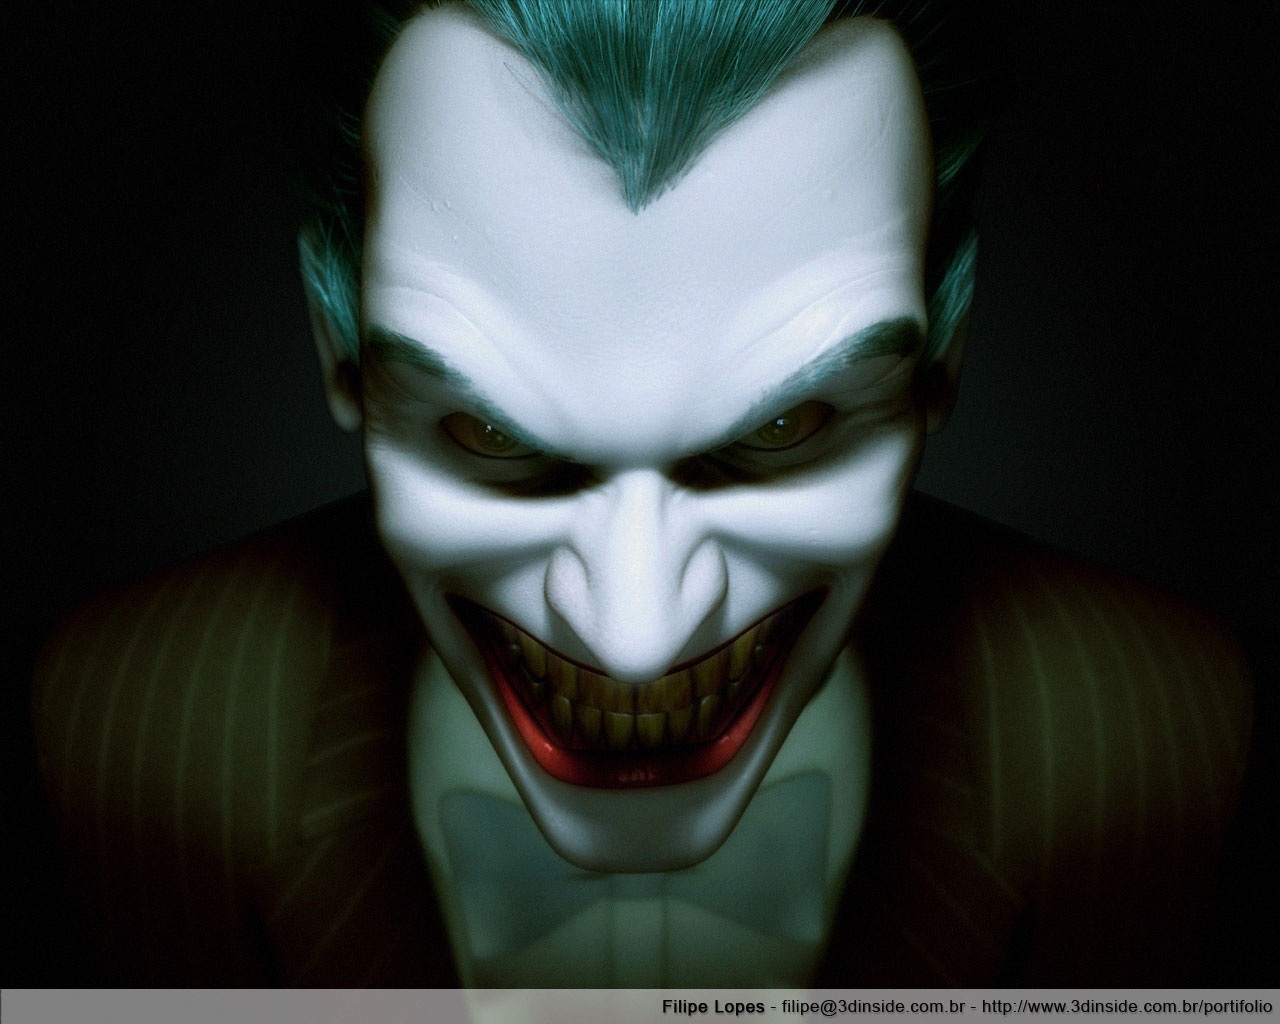 Scary Face Wallpaper - Profile Joker - HD Wallpaper 